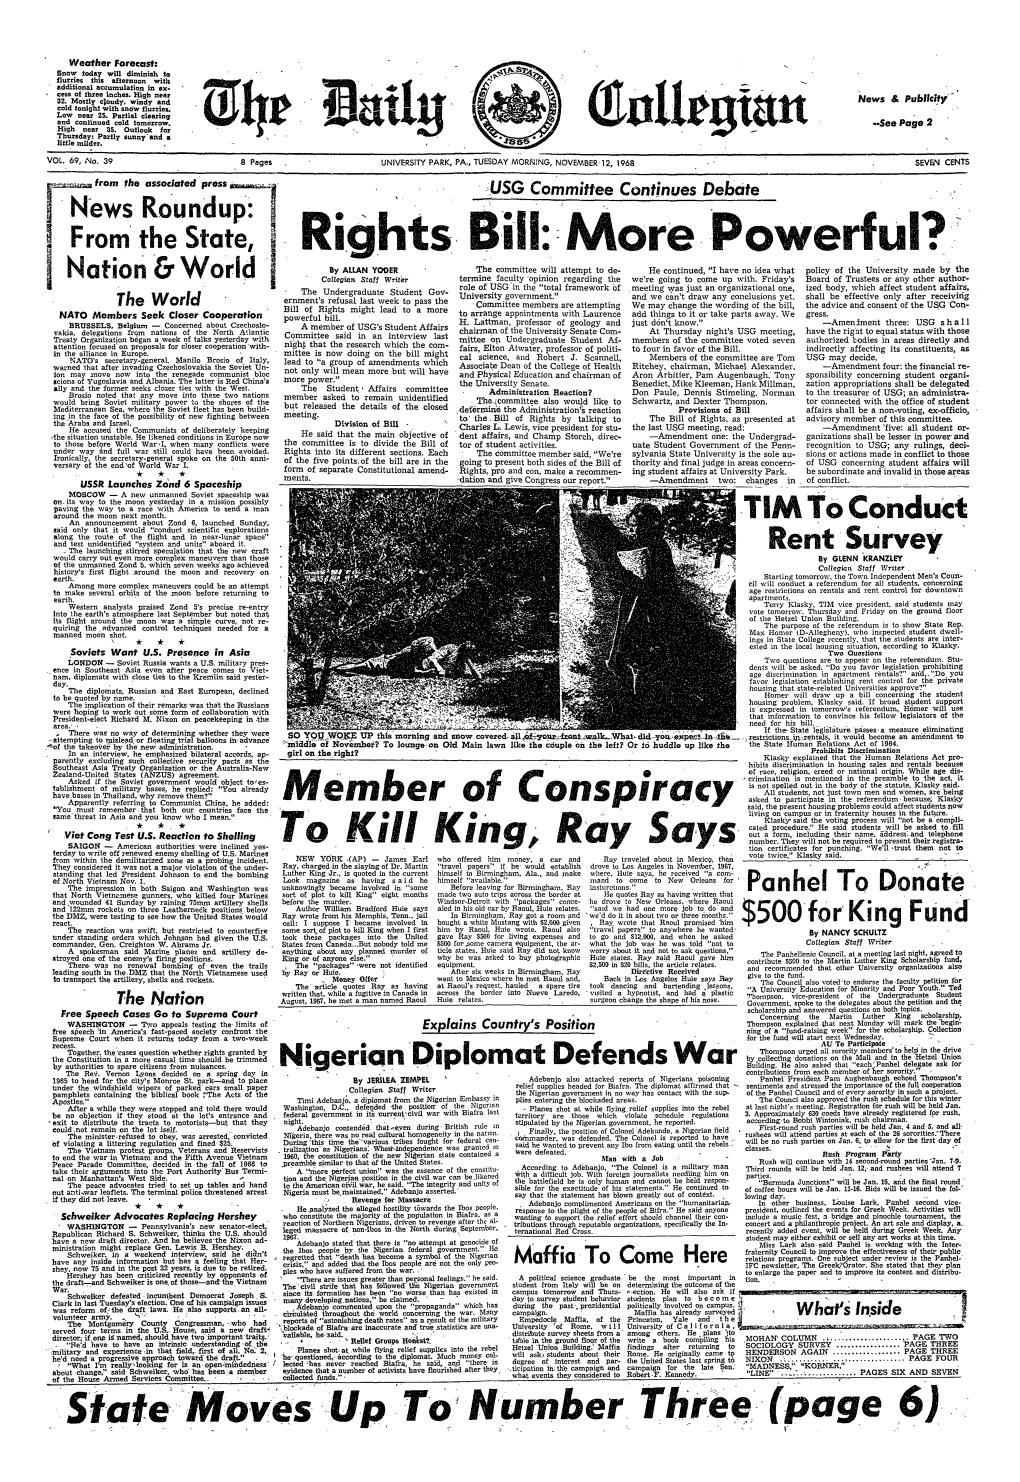 November 12, 1968